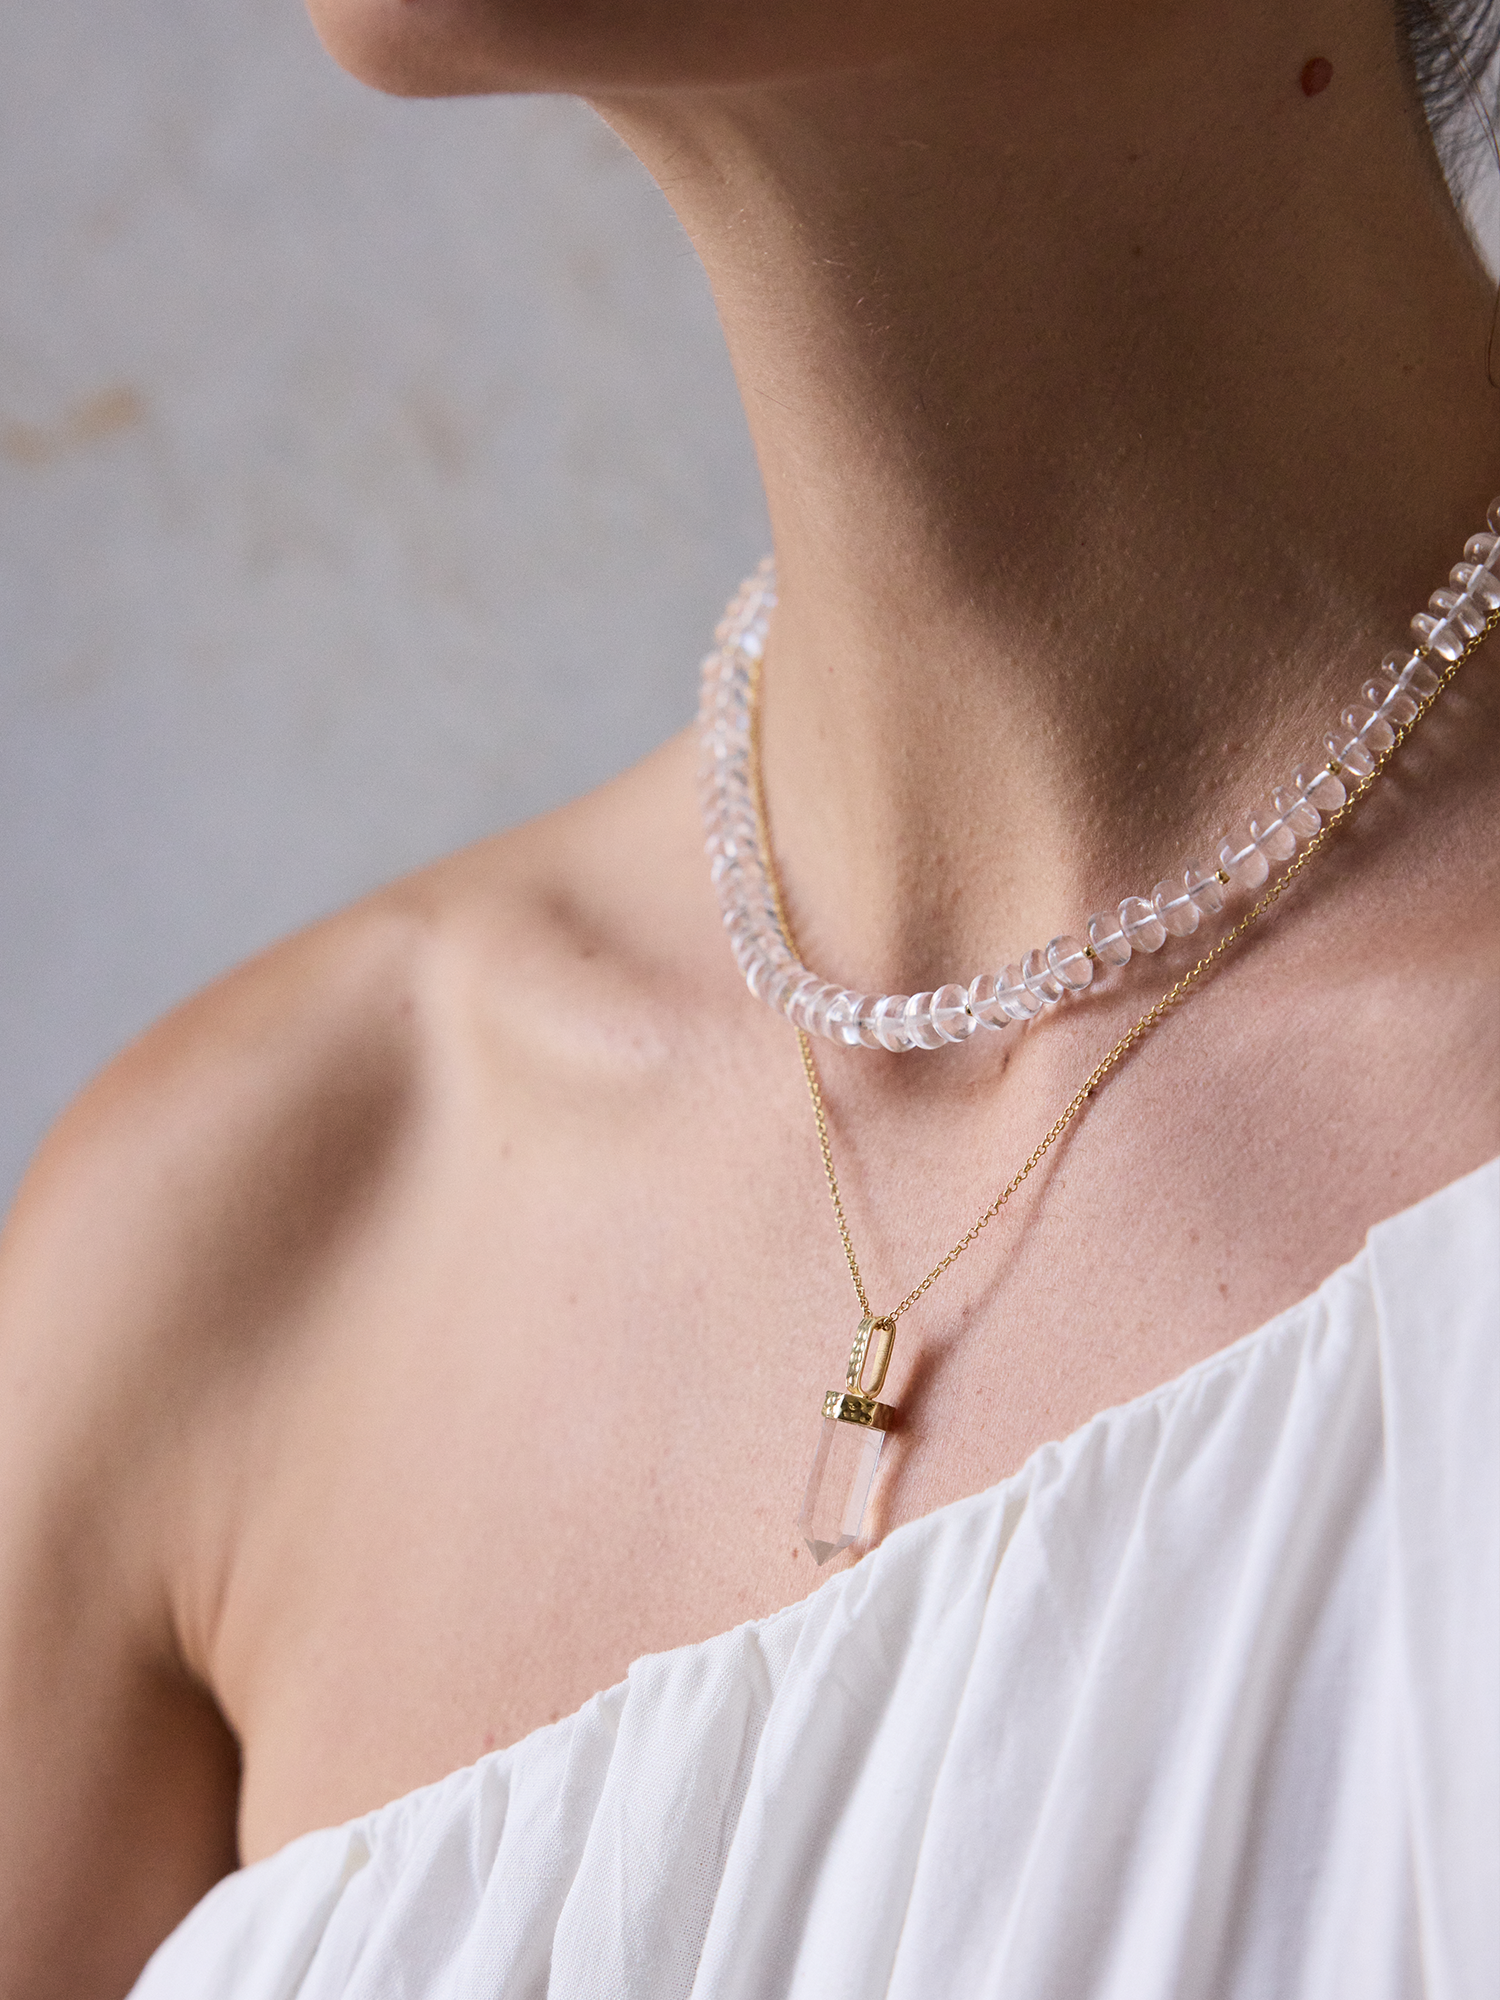 halcyon necklace | clear quartz